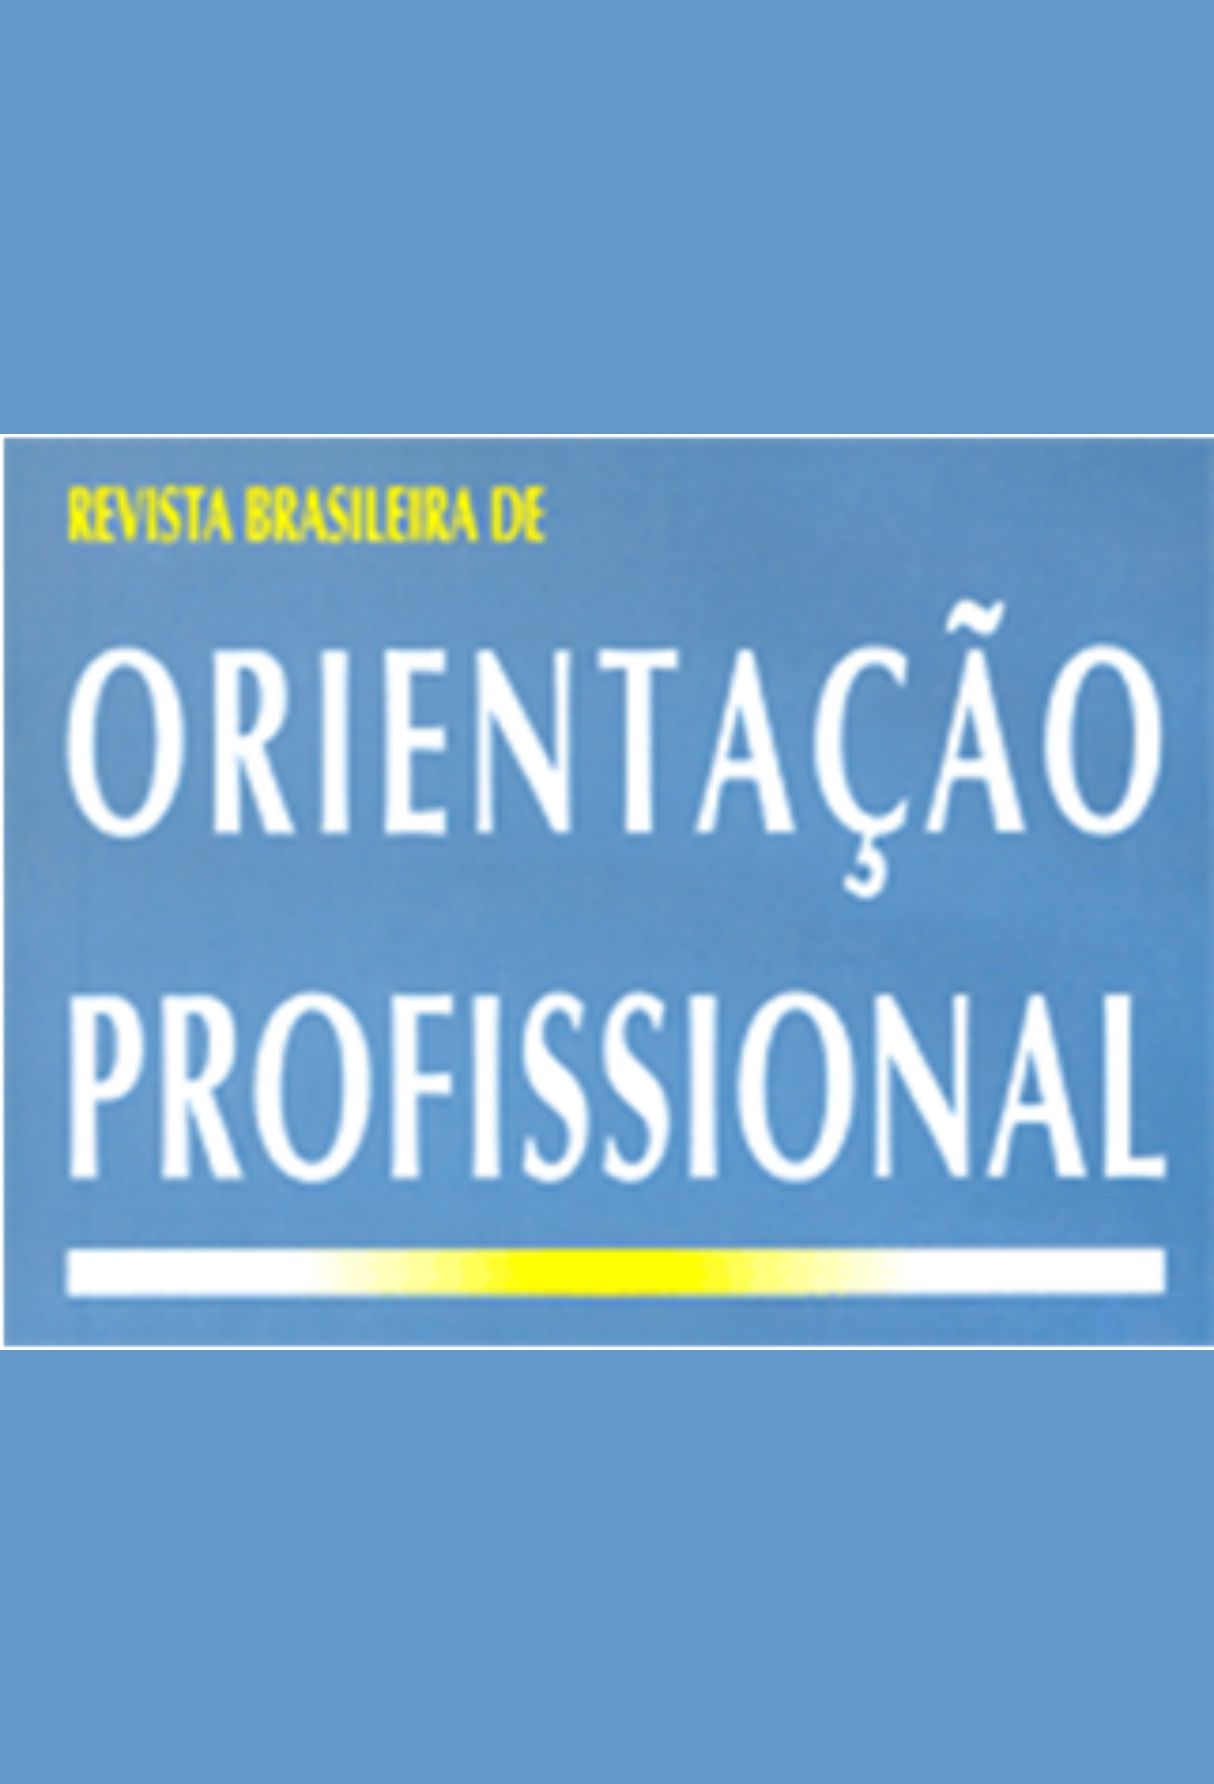 Capa: Revista Brasileira de Orientação Professional